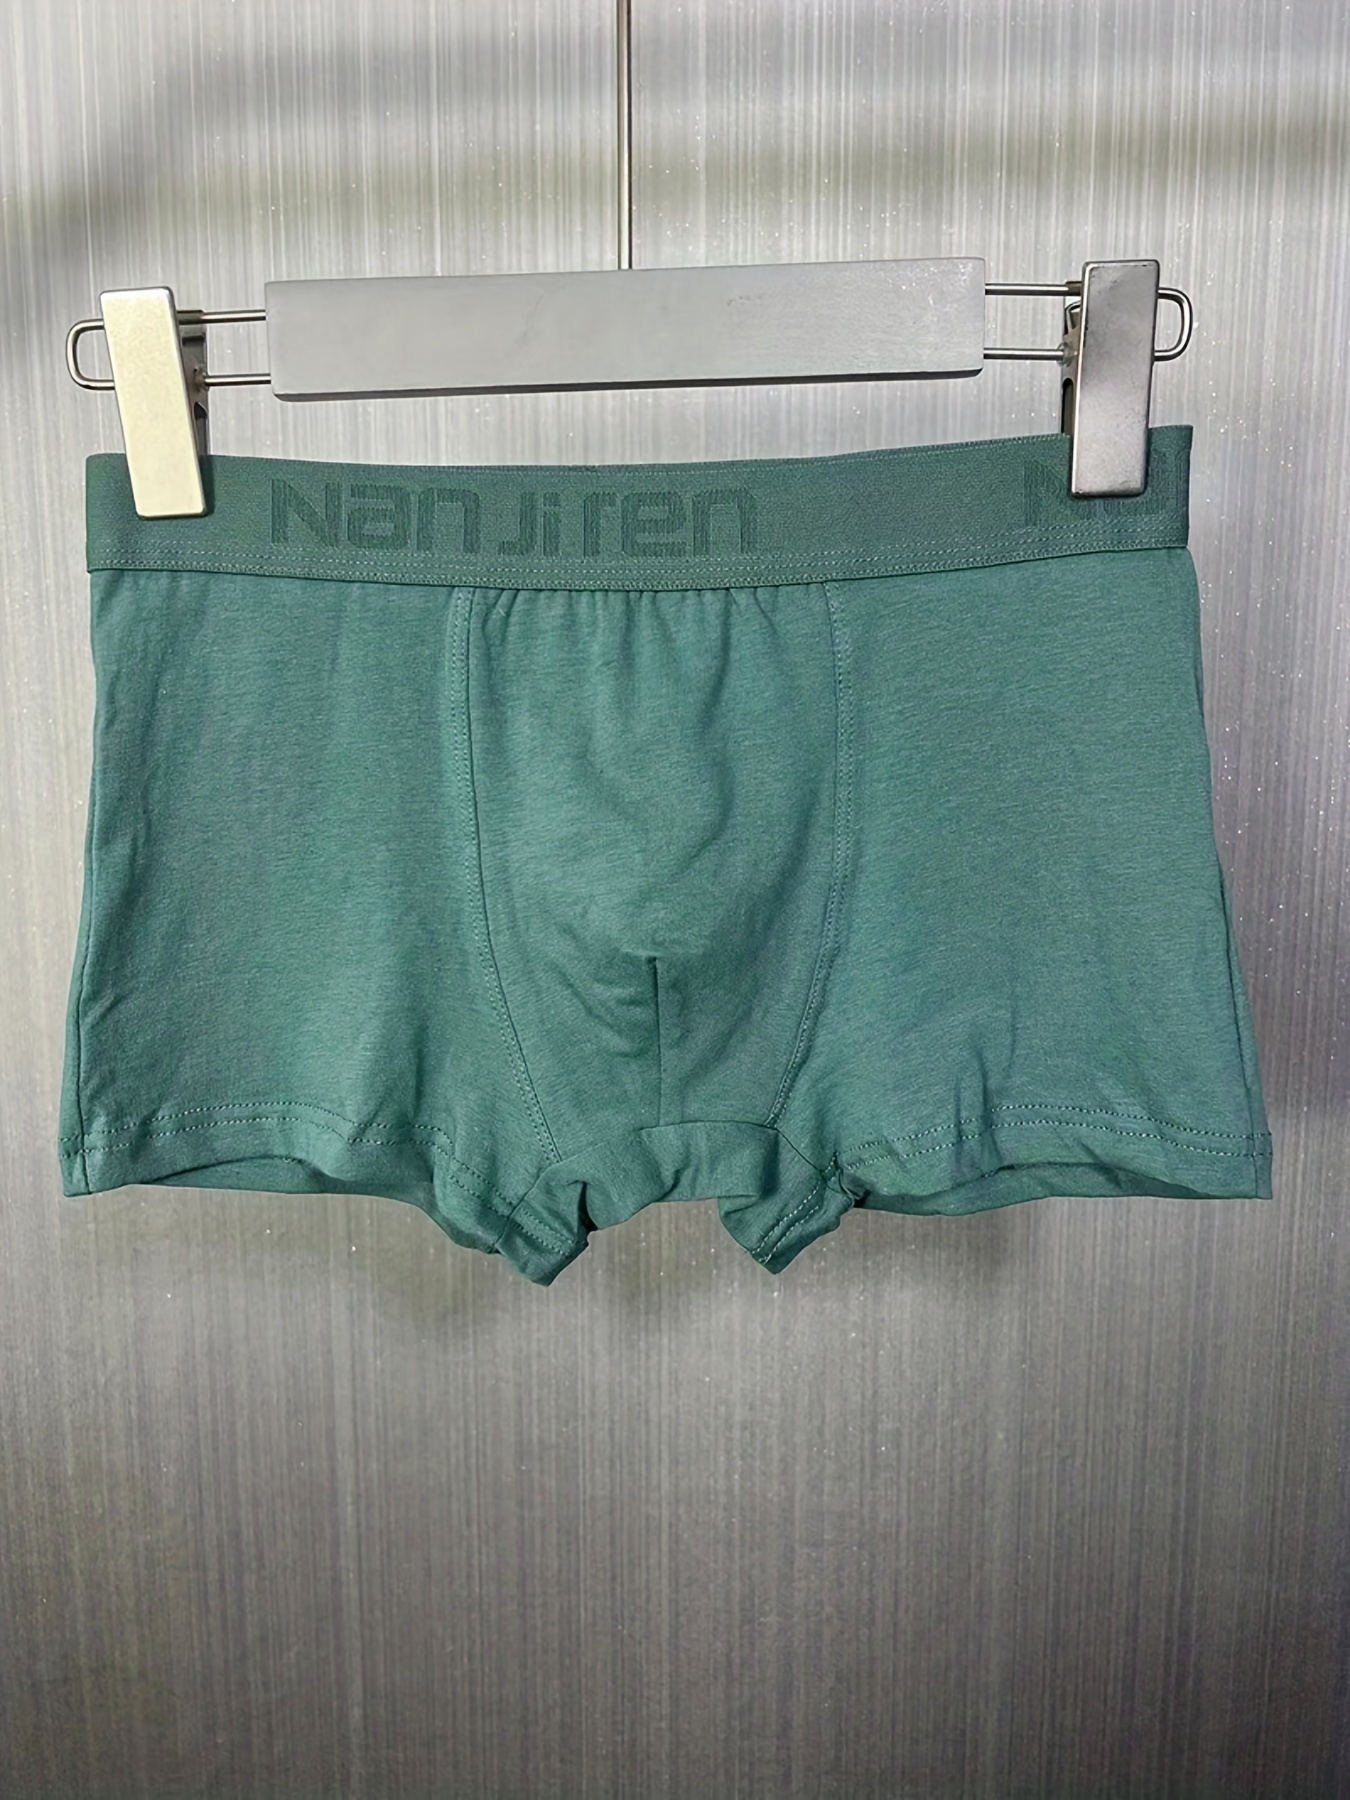 Men's Panties 5pcs/lot Underwear Men Boxers Cotton Shorts